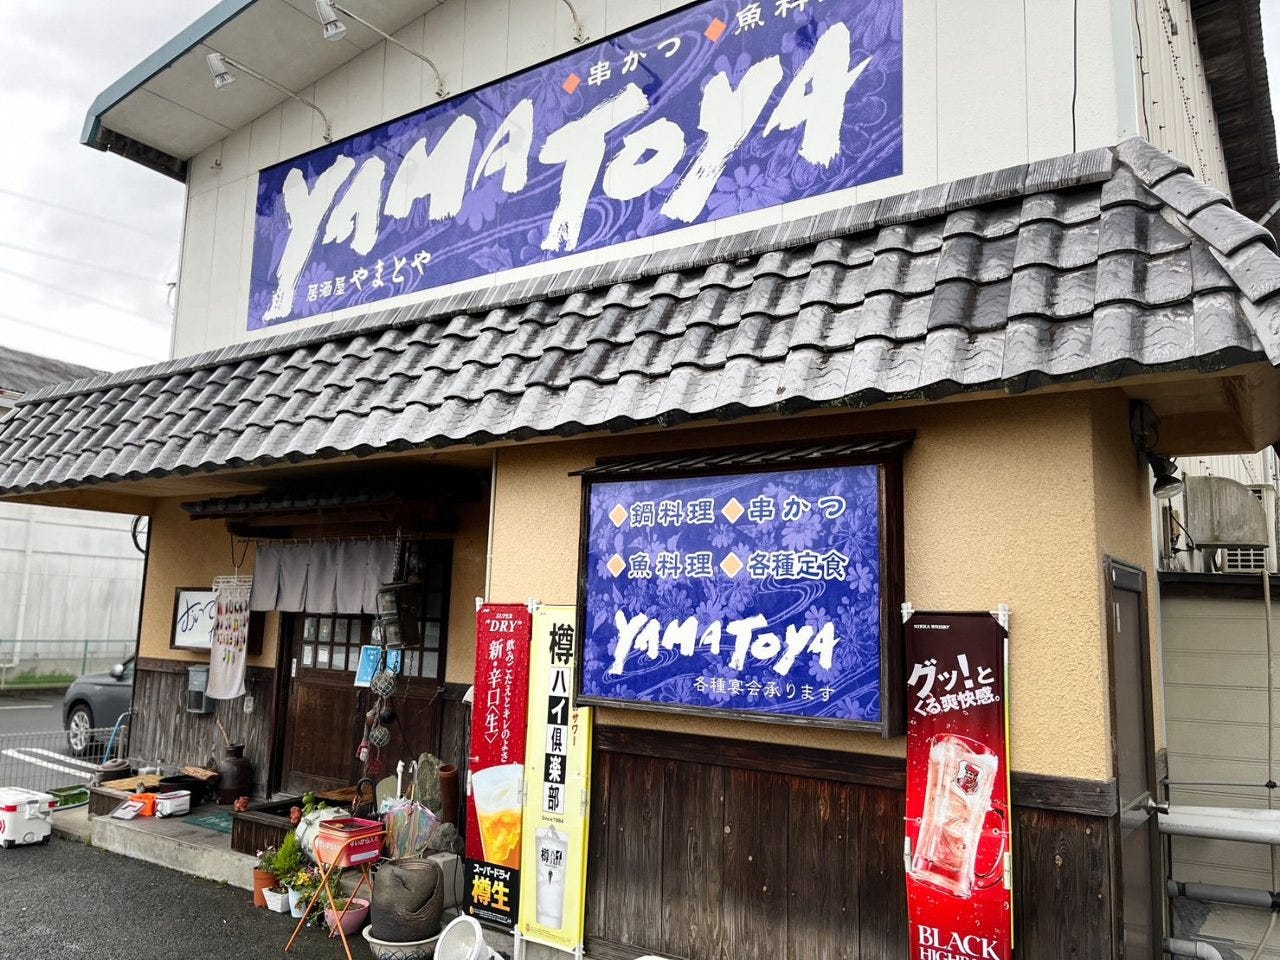 居酒屋yamatoya image